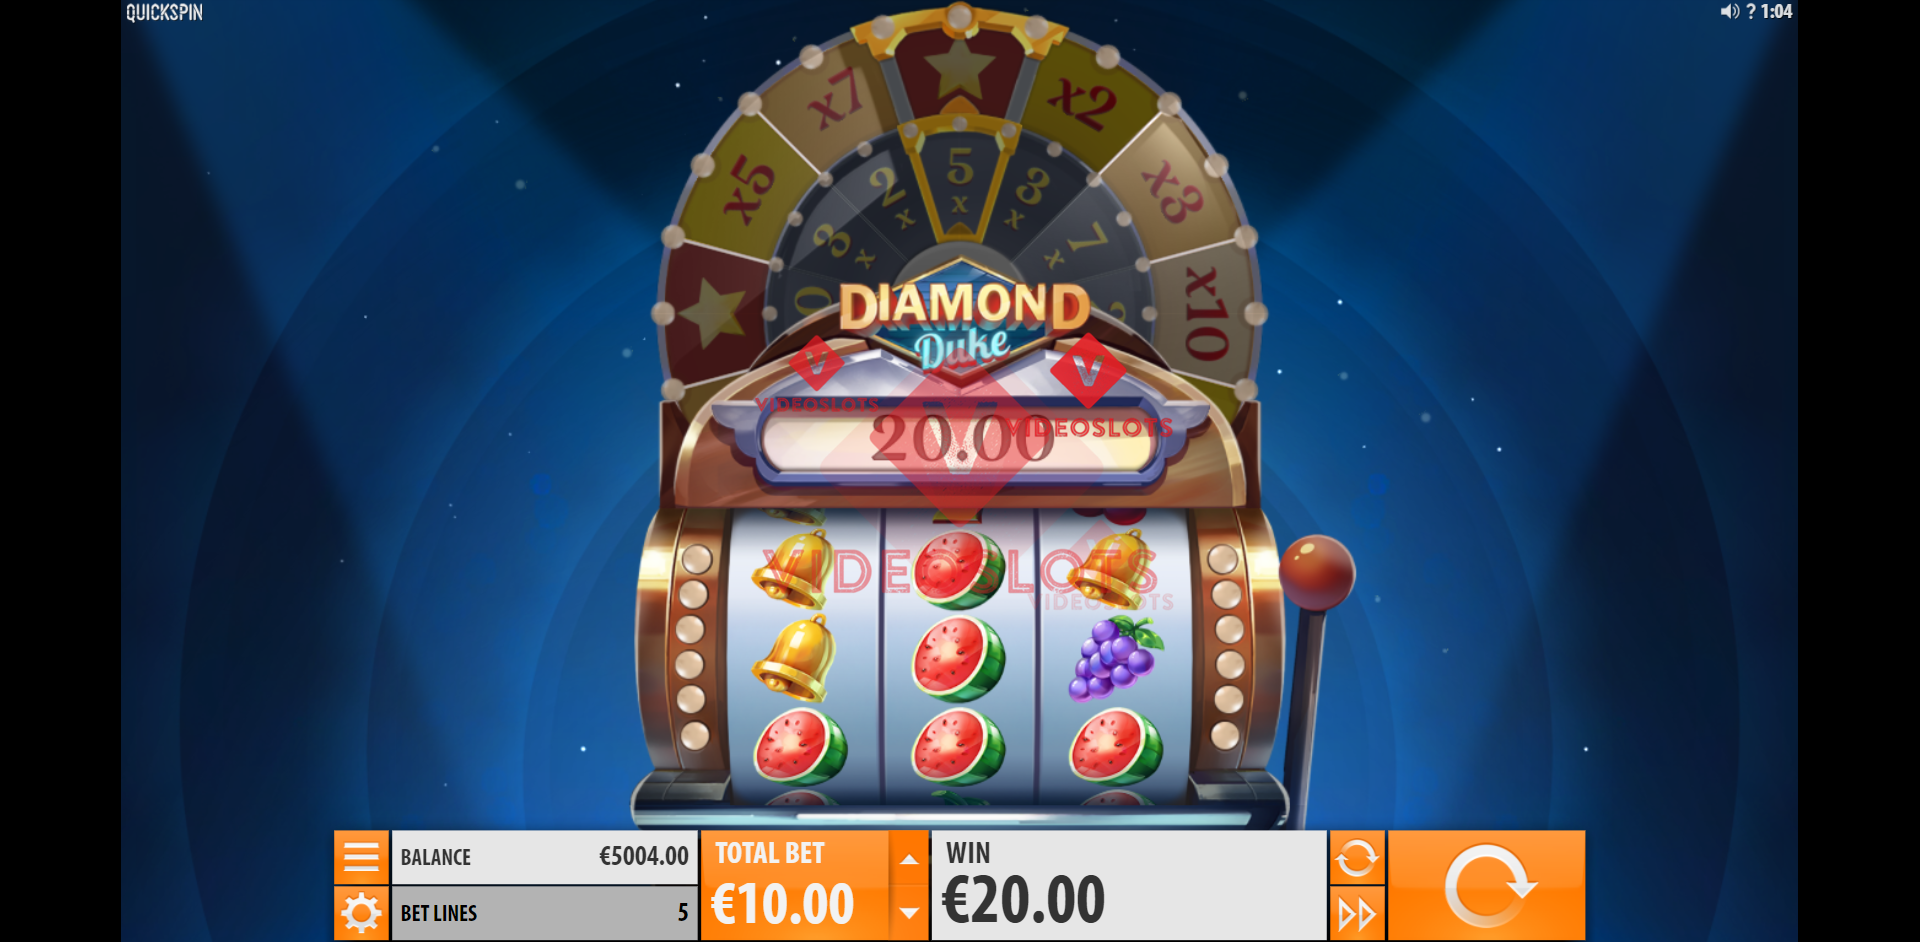 Base Game for Diamond Duke slot from Quickspin